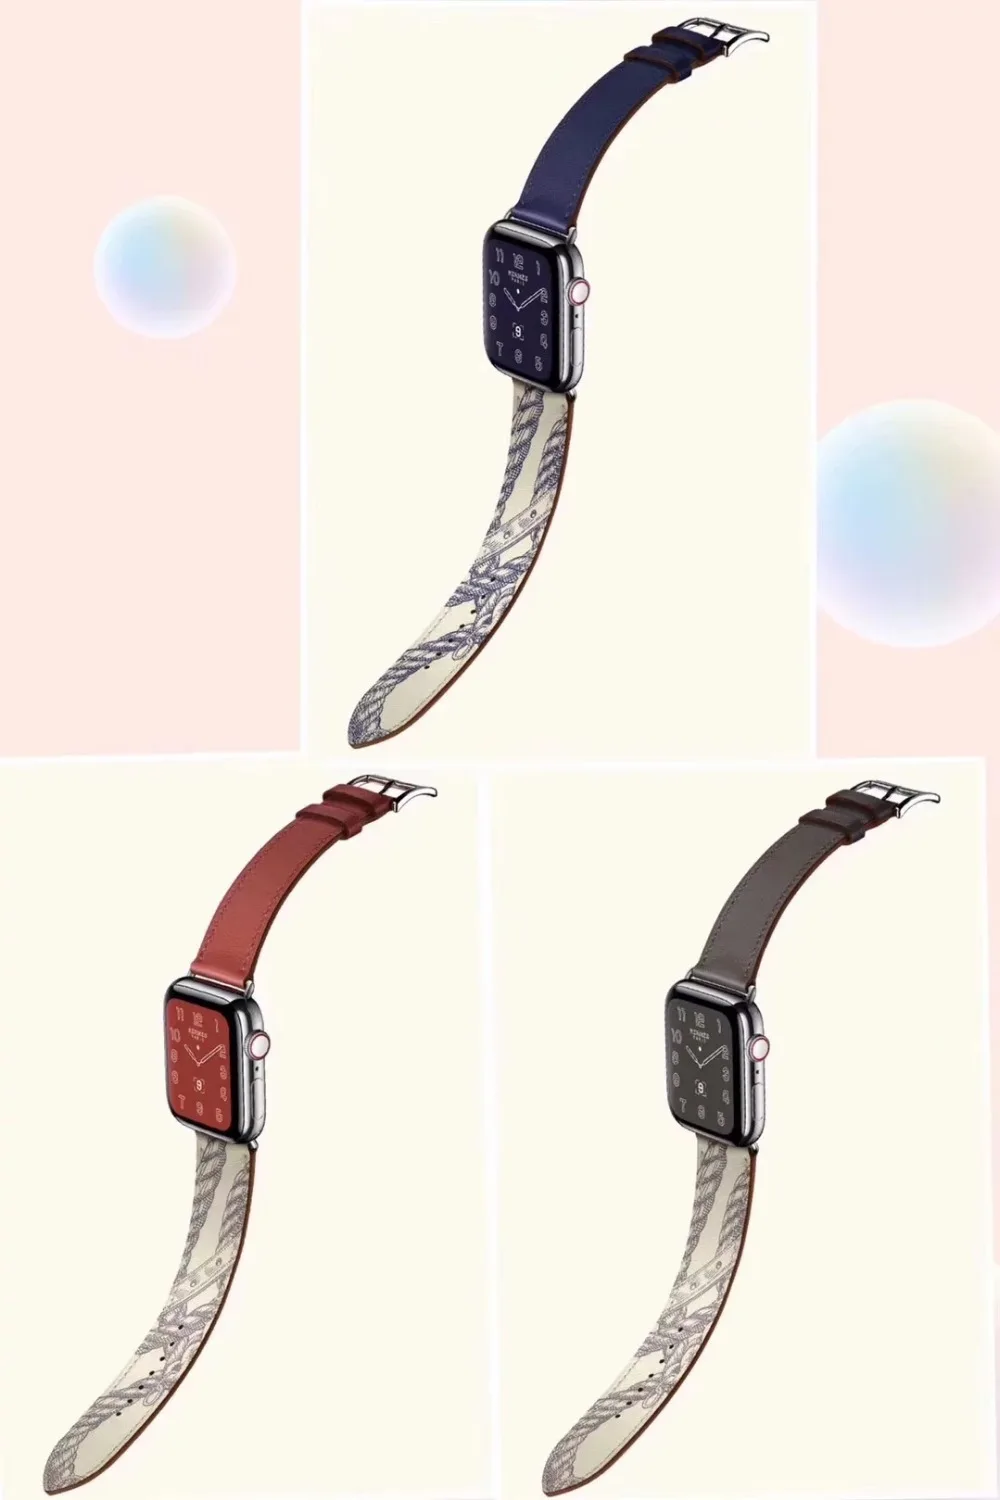 Кожаный двойной тур петля Напульсники браслет ремешок разноцветные ремешок для наручных часов для Apple Watch Series 5/4/3/2 40 мм/44 мм/38 мм/42